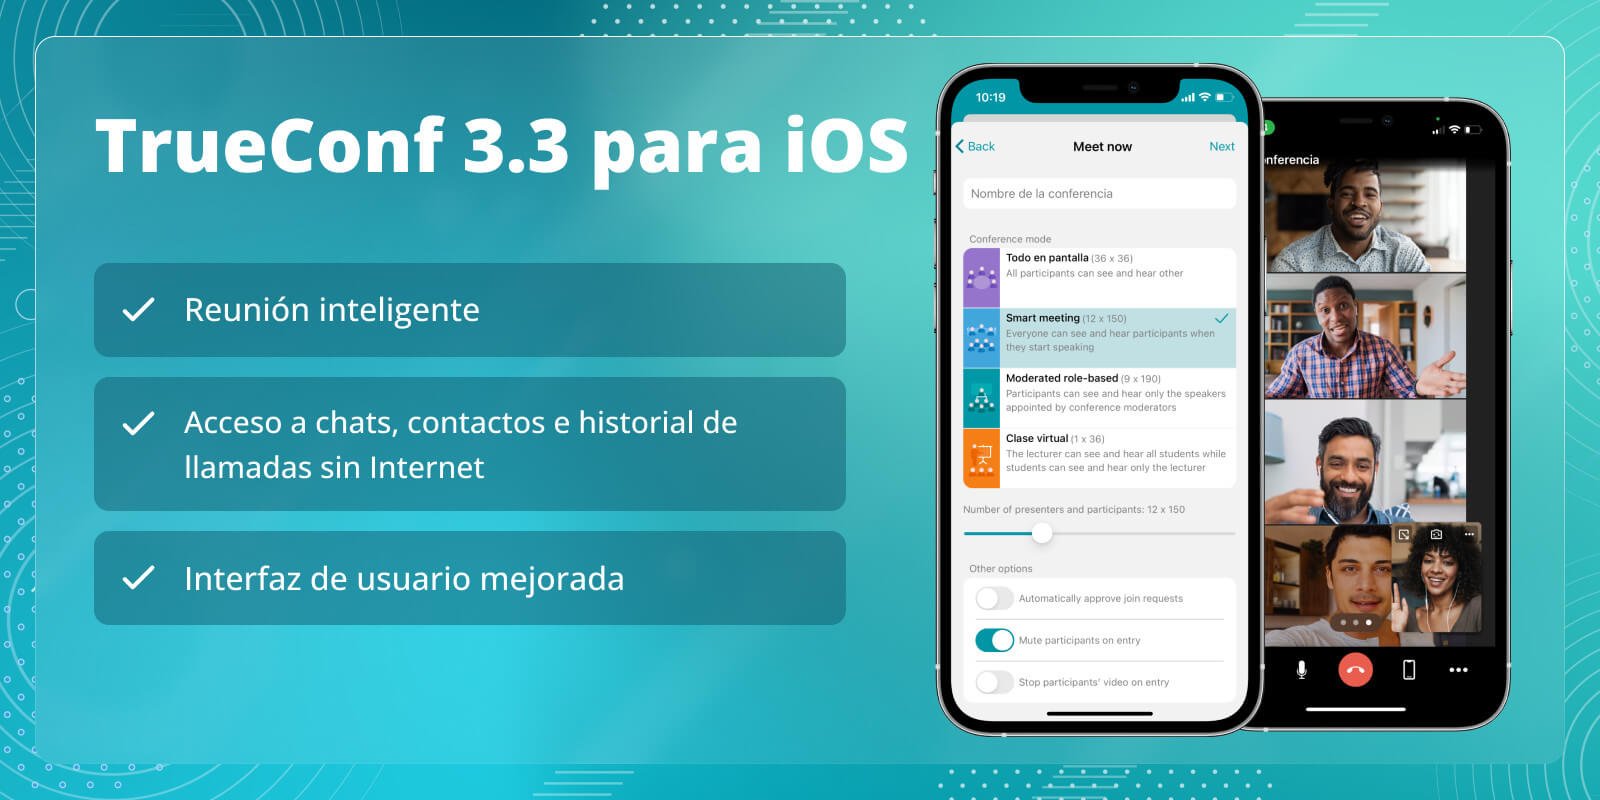 TrueConf 3.3 para iOS: nueva interfaz de usuario, modo de reunión inteligente, acceso sin conexión a chats, contactos e historial de llamadas 1